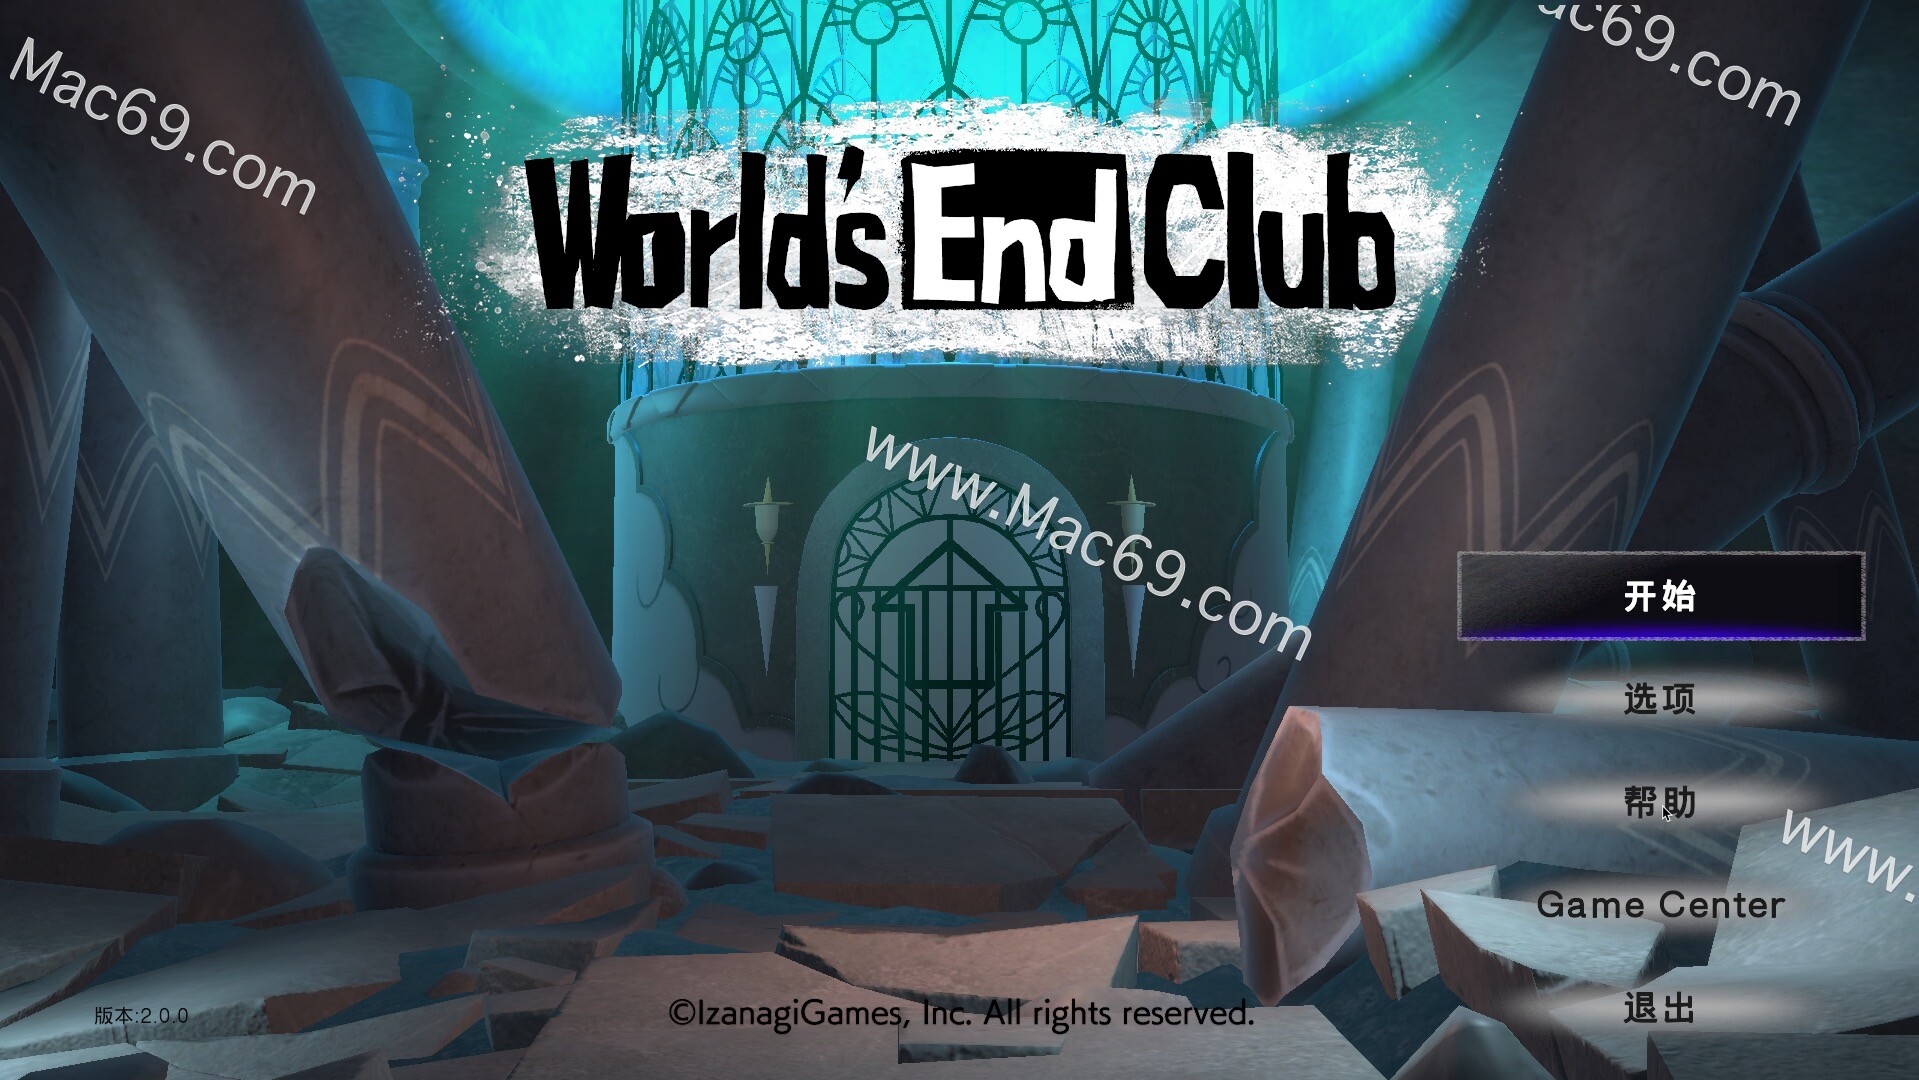 世界末日俱乐部World‘s End Club for mac(推理解谜游戏)